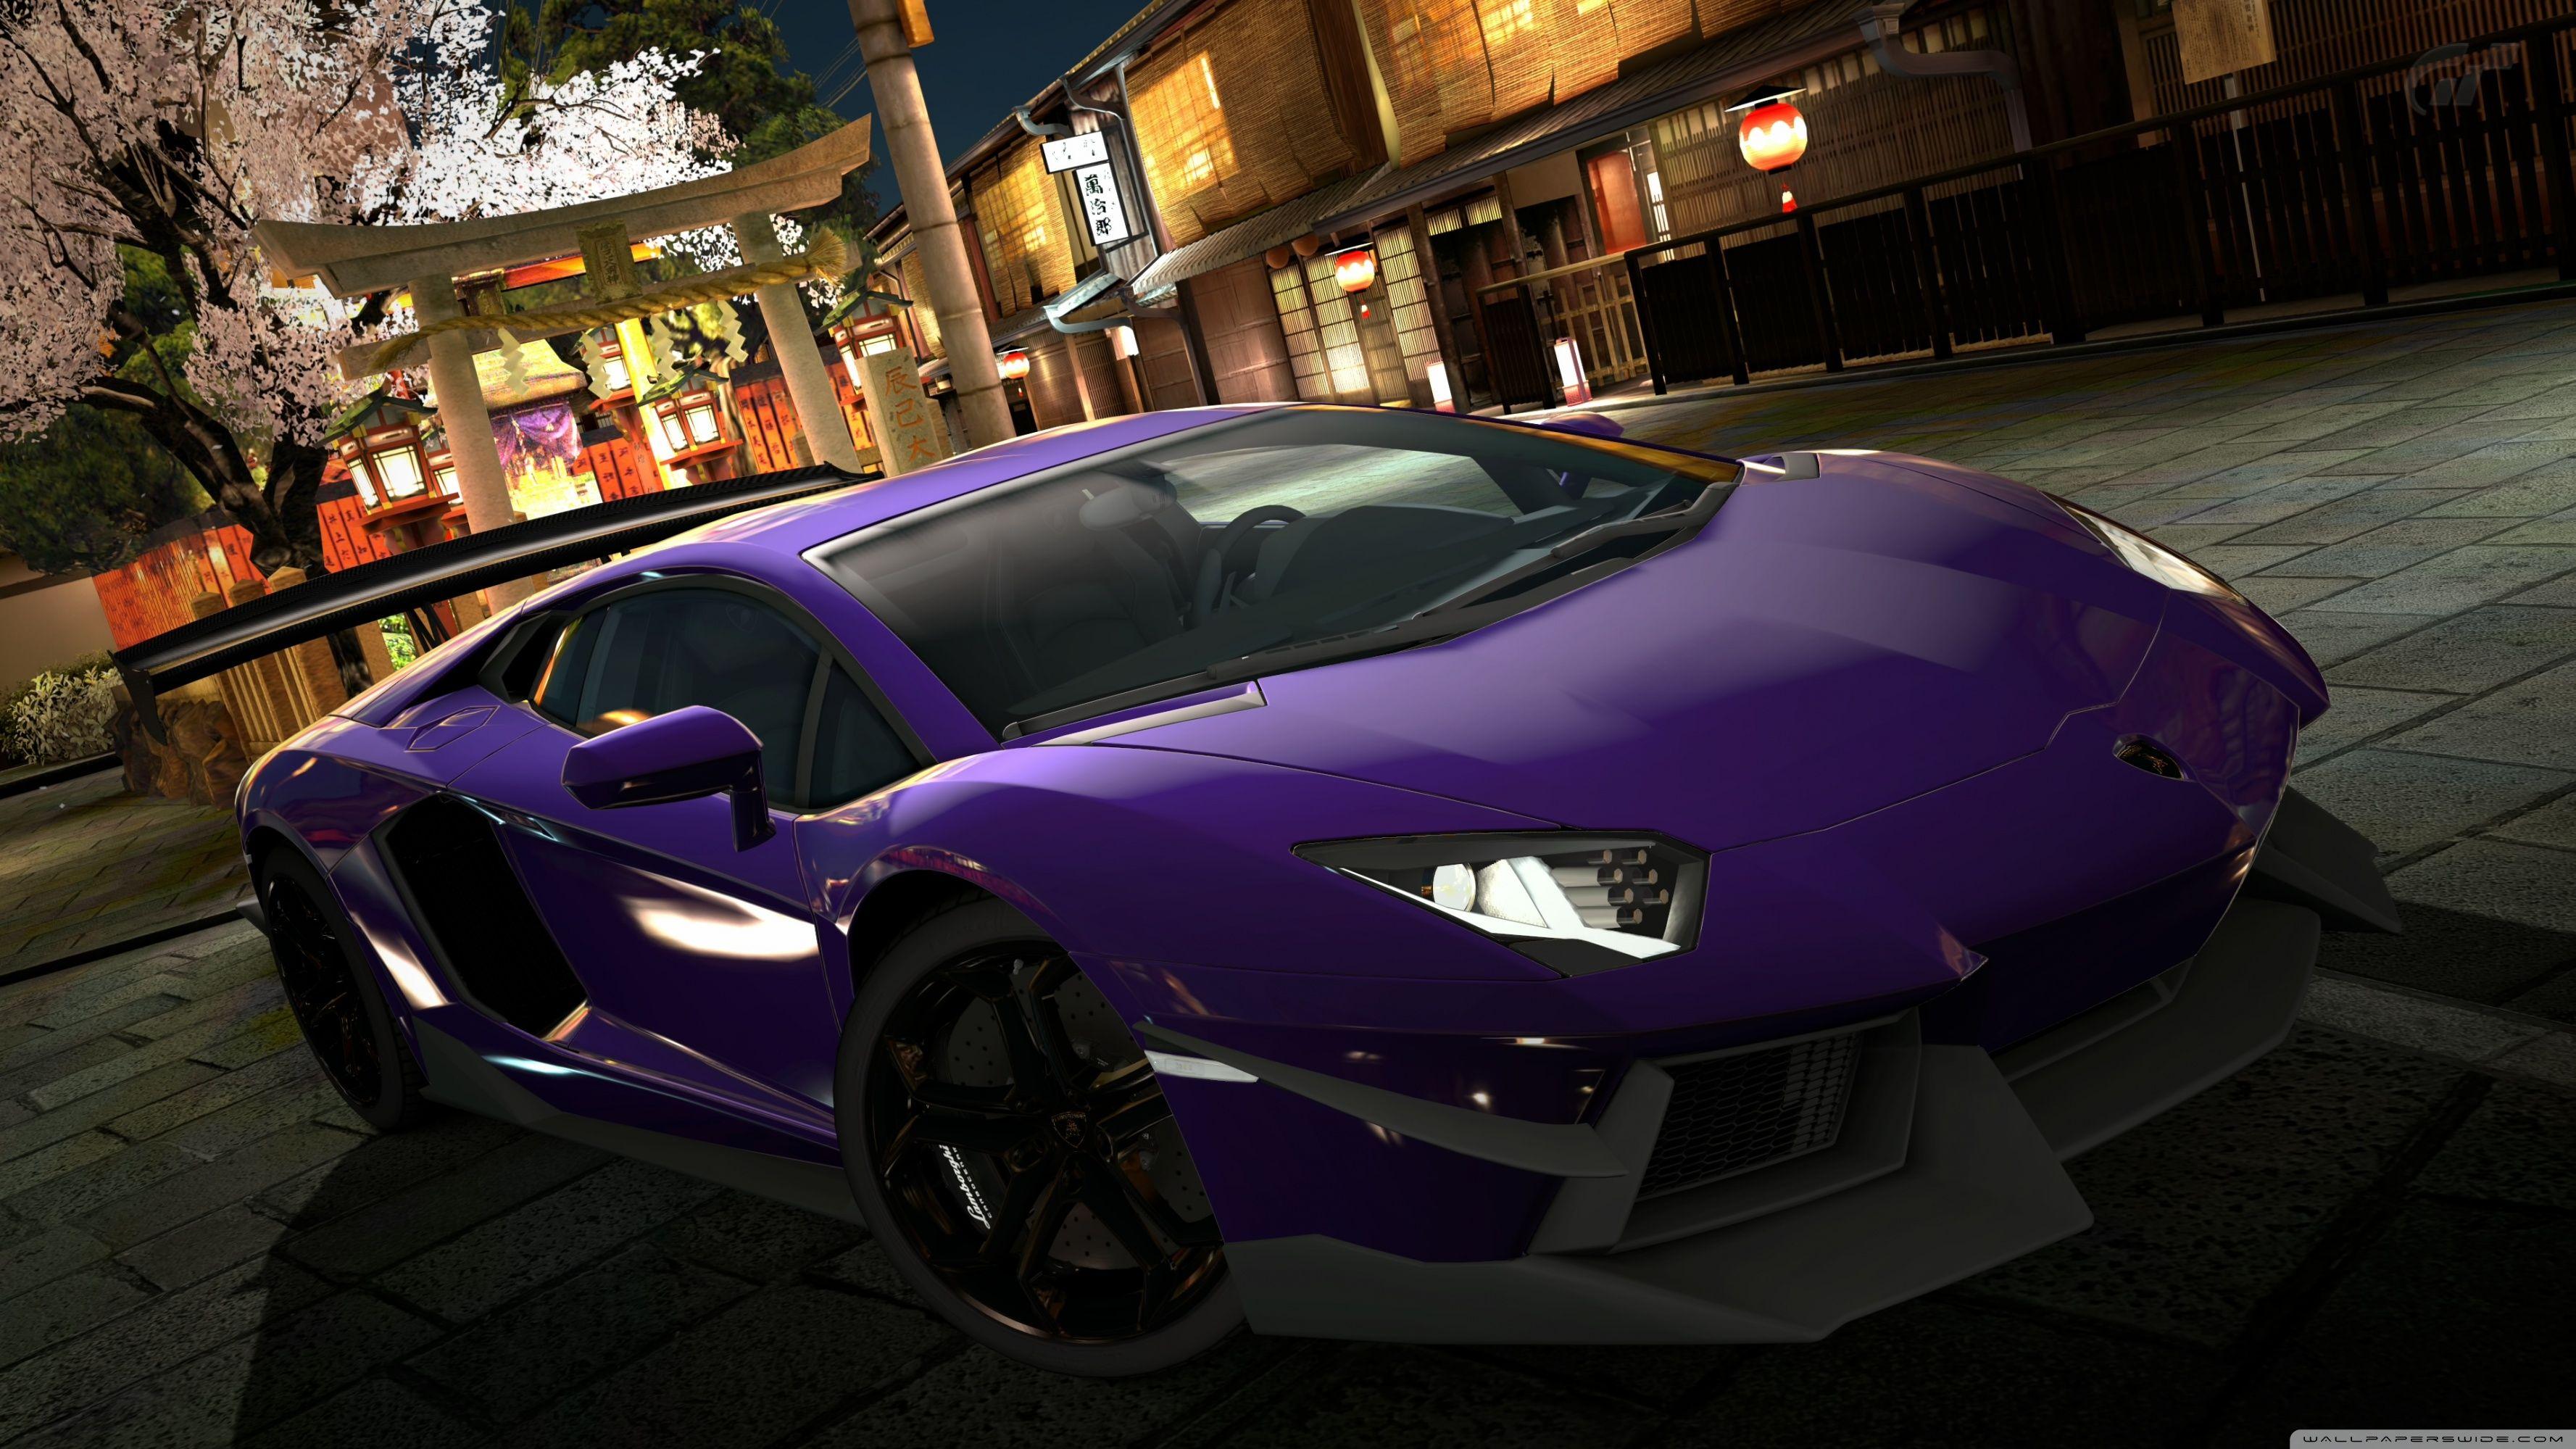 Purple Lamborghini Wallpapers Top Free Purple Lamborghini